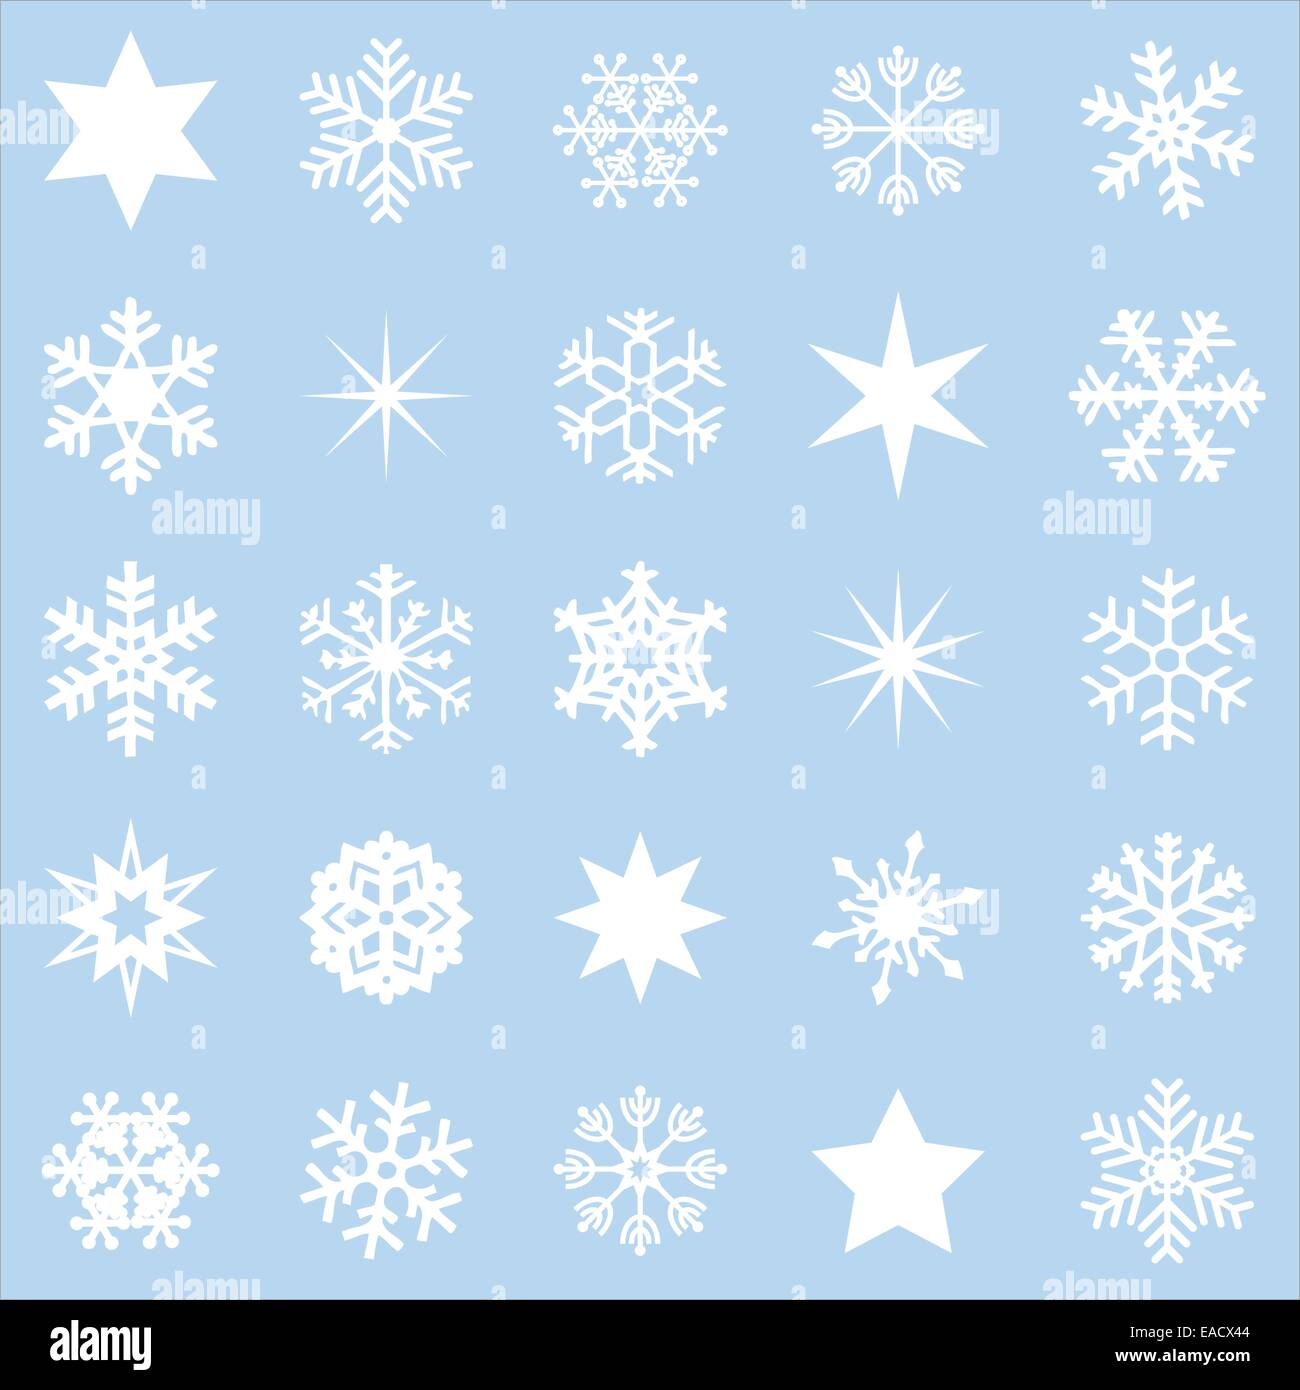 Stern Sterne Schnee Schneestern Schneesterne Grafik Grafiken Illustration Illustrationen Icon Icons weiss blau hellblau Weihnach Stock Photo